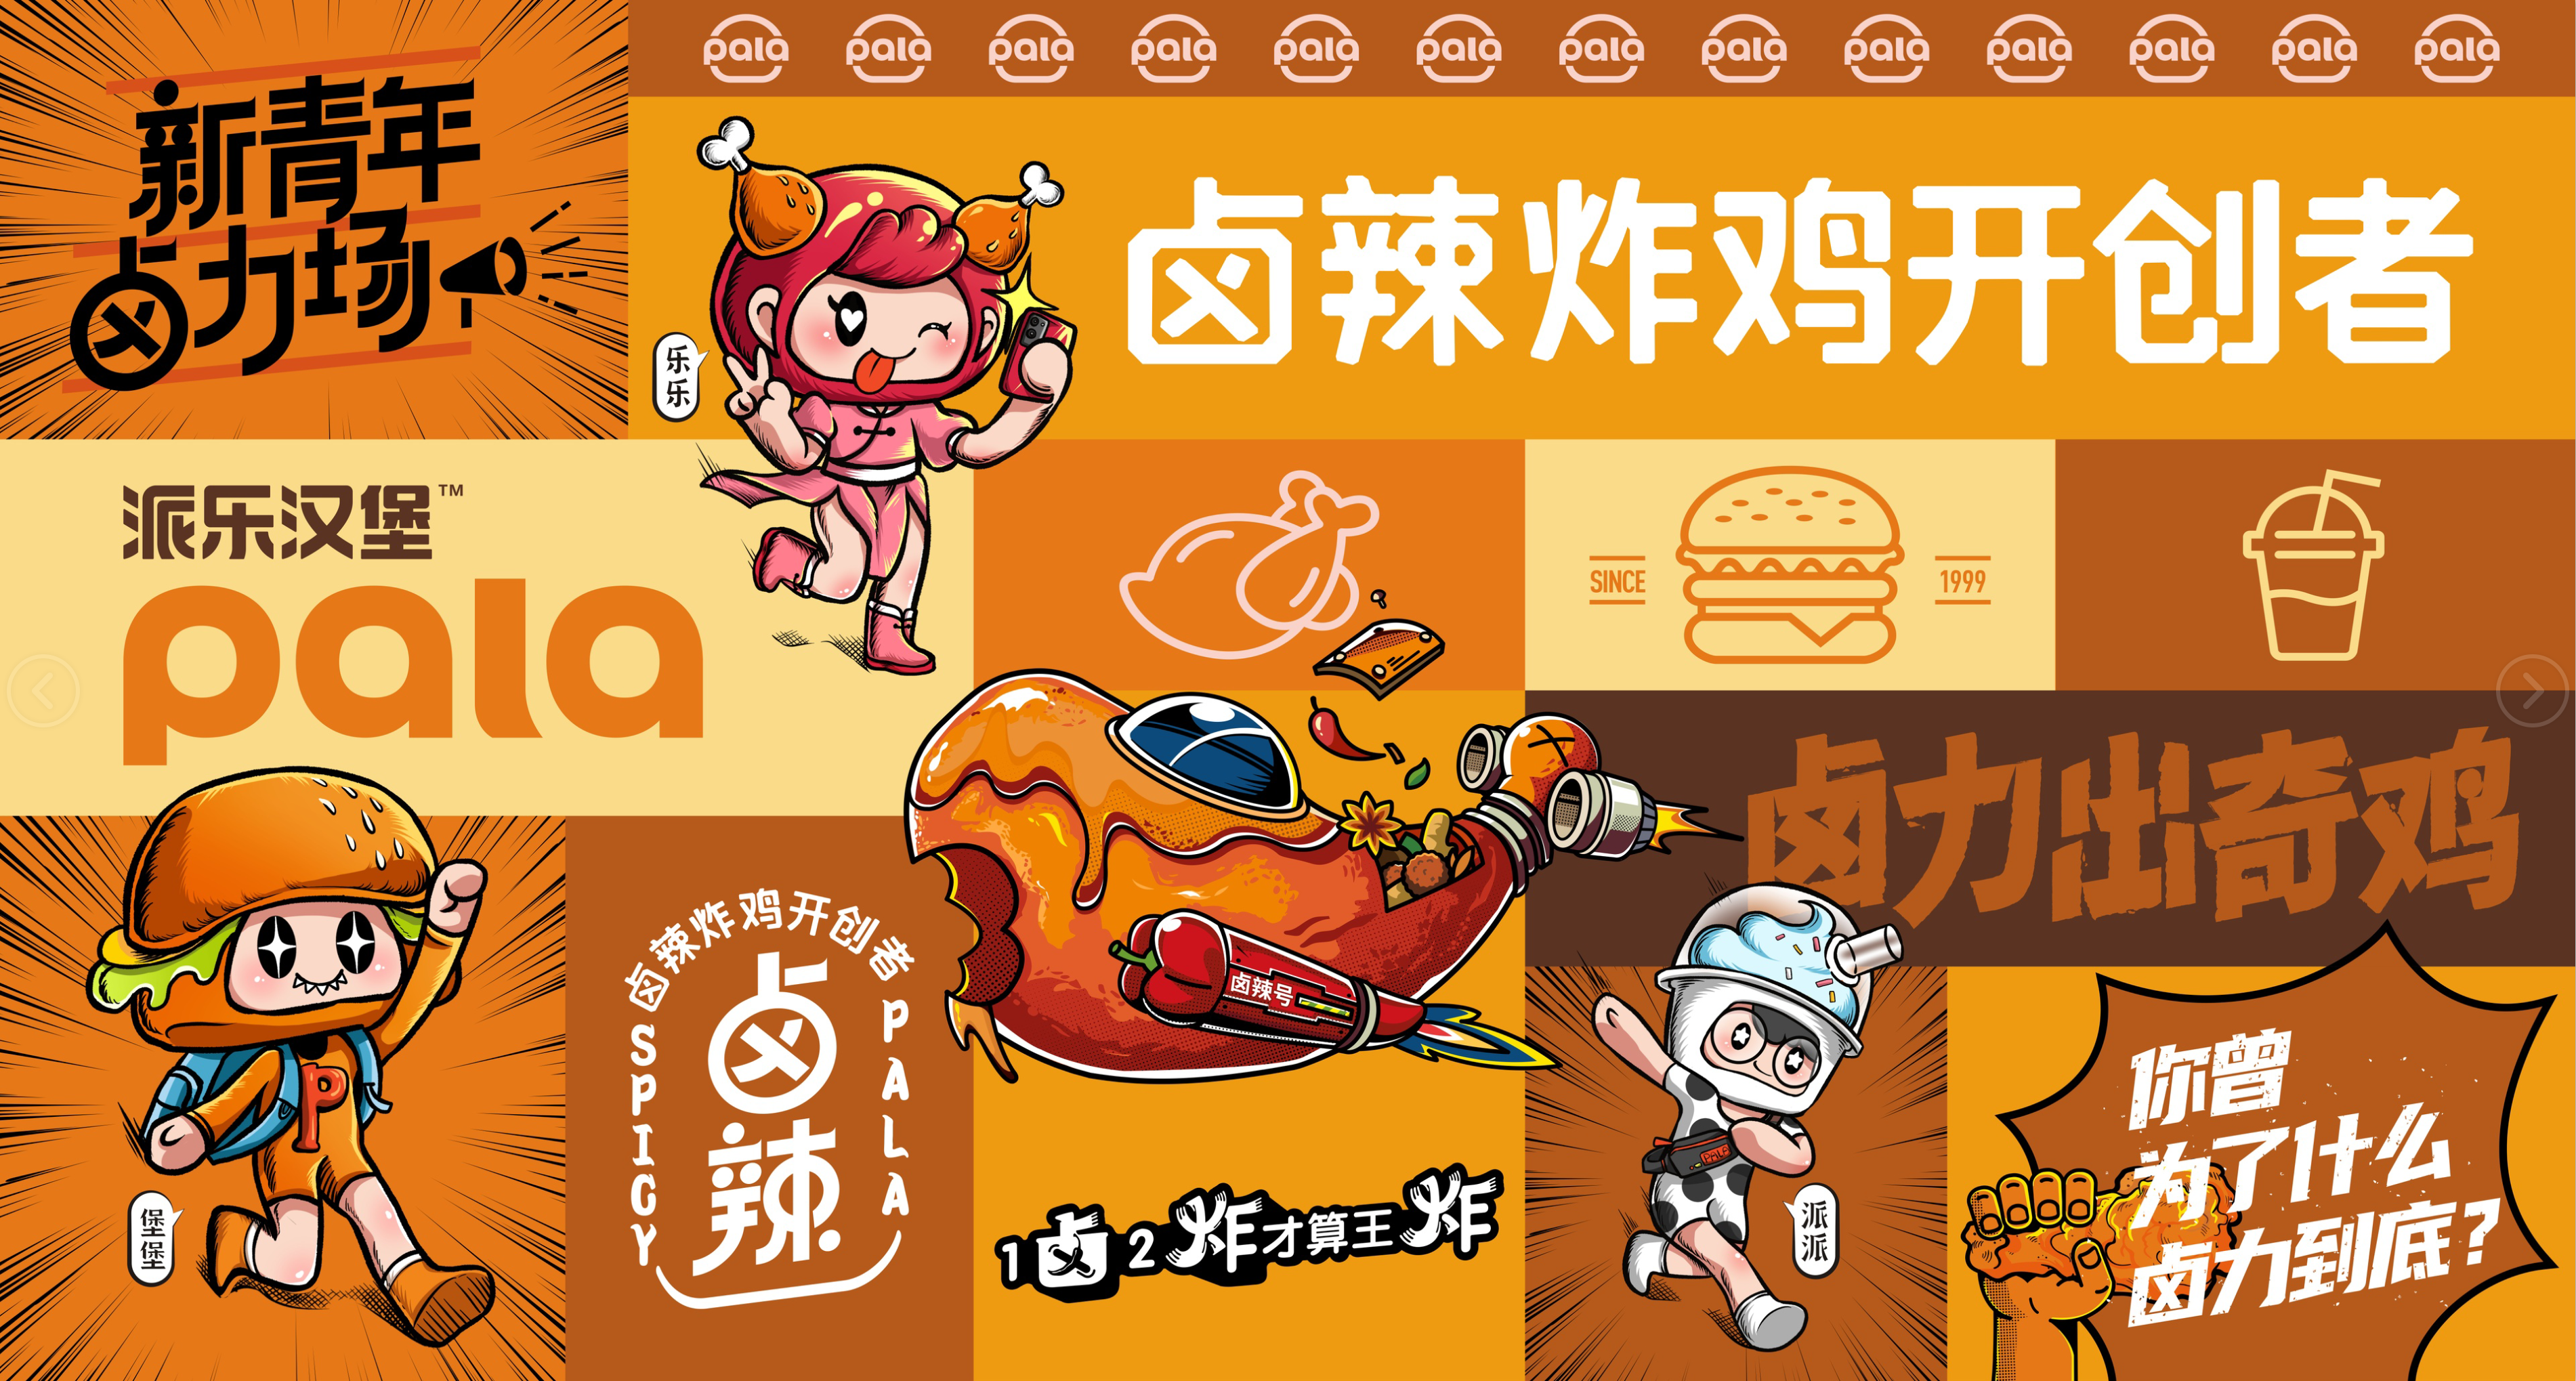 牢记使命不忘初心,派乐汉堡22周年立志成为中国炸鸡汉堡第一品牌